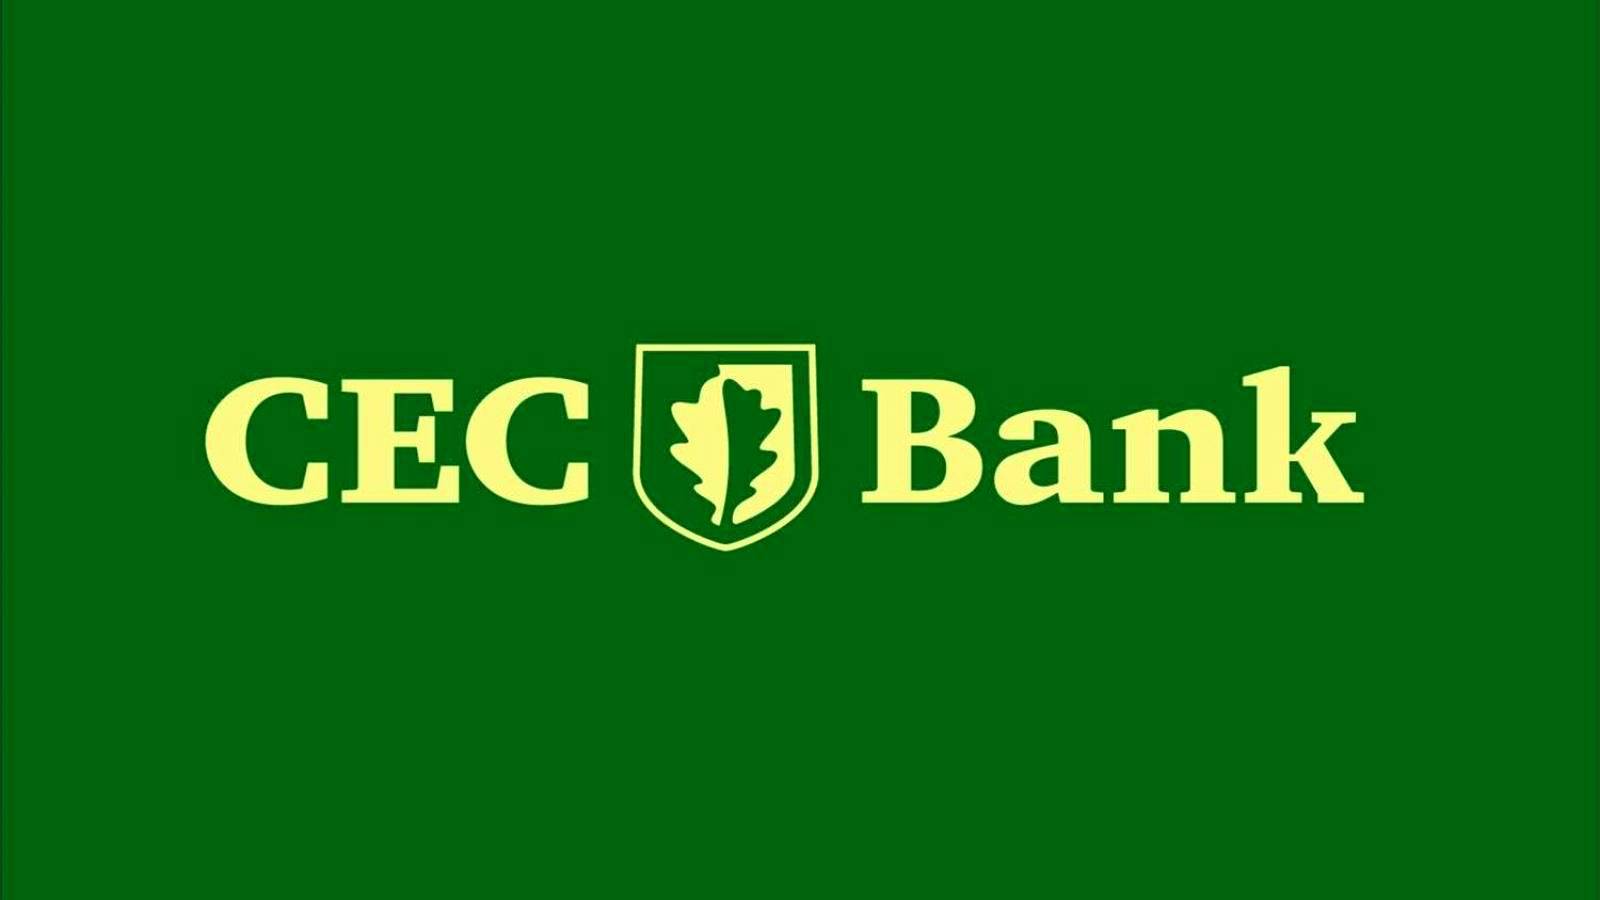 CEC Bank DRINGENDE aankondiging die klanten nu moeten weten